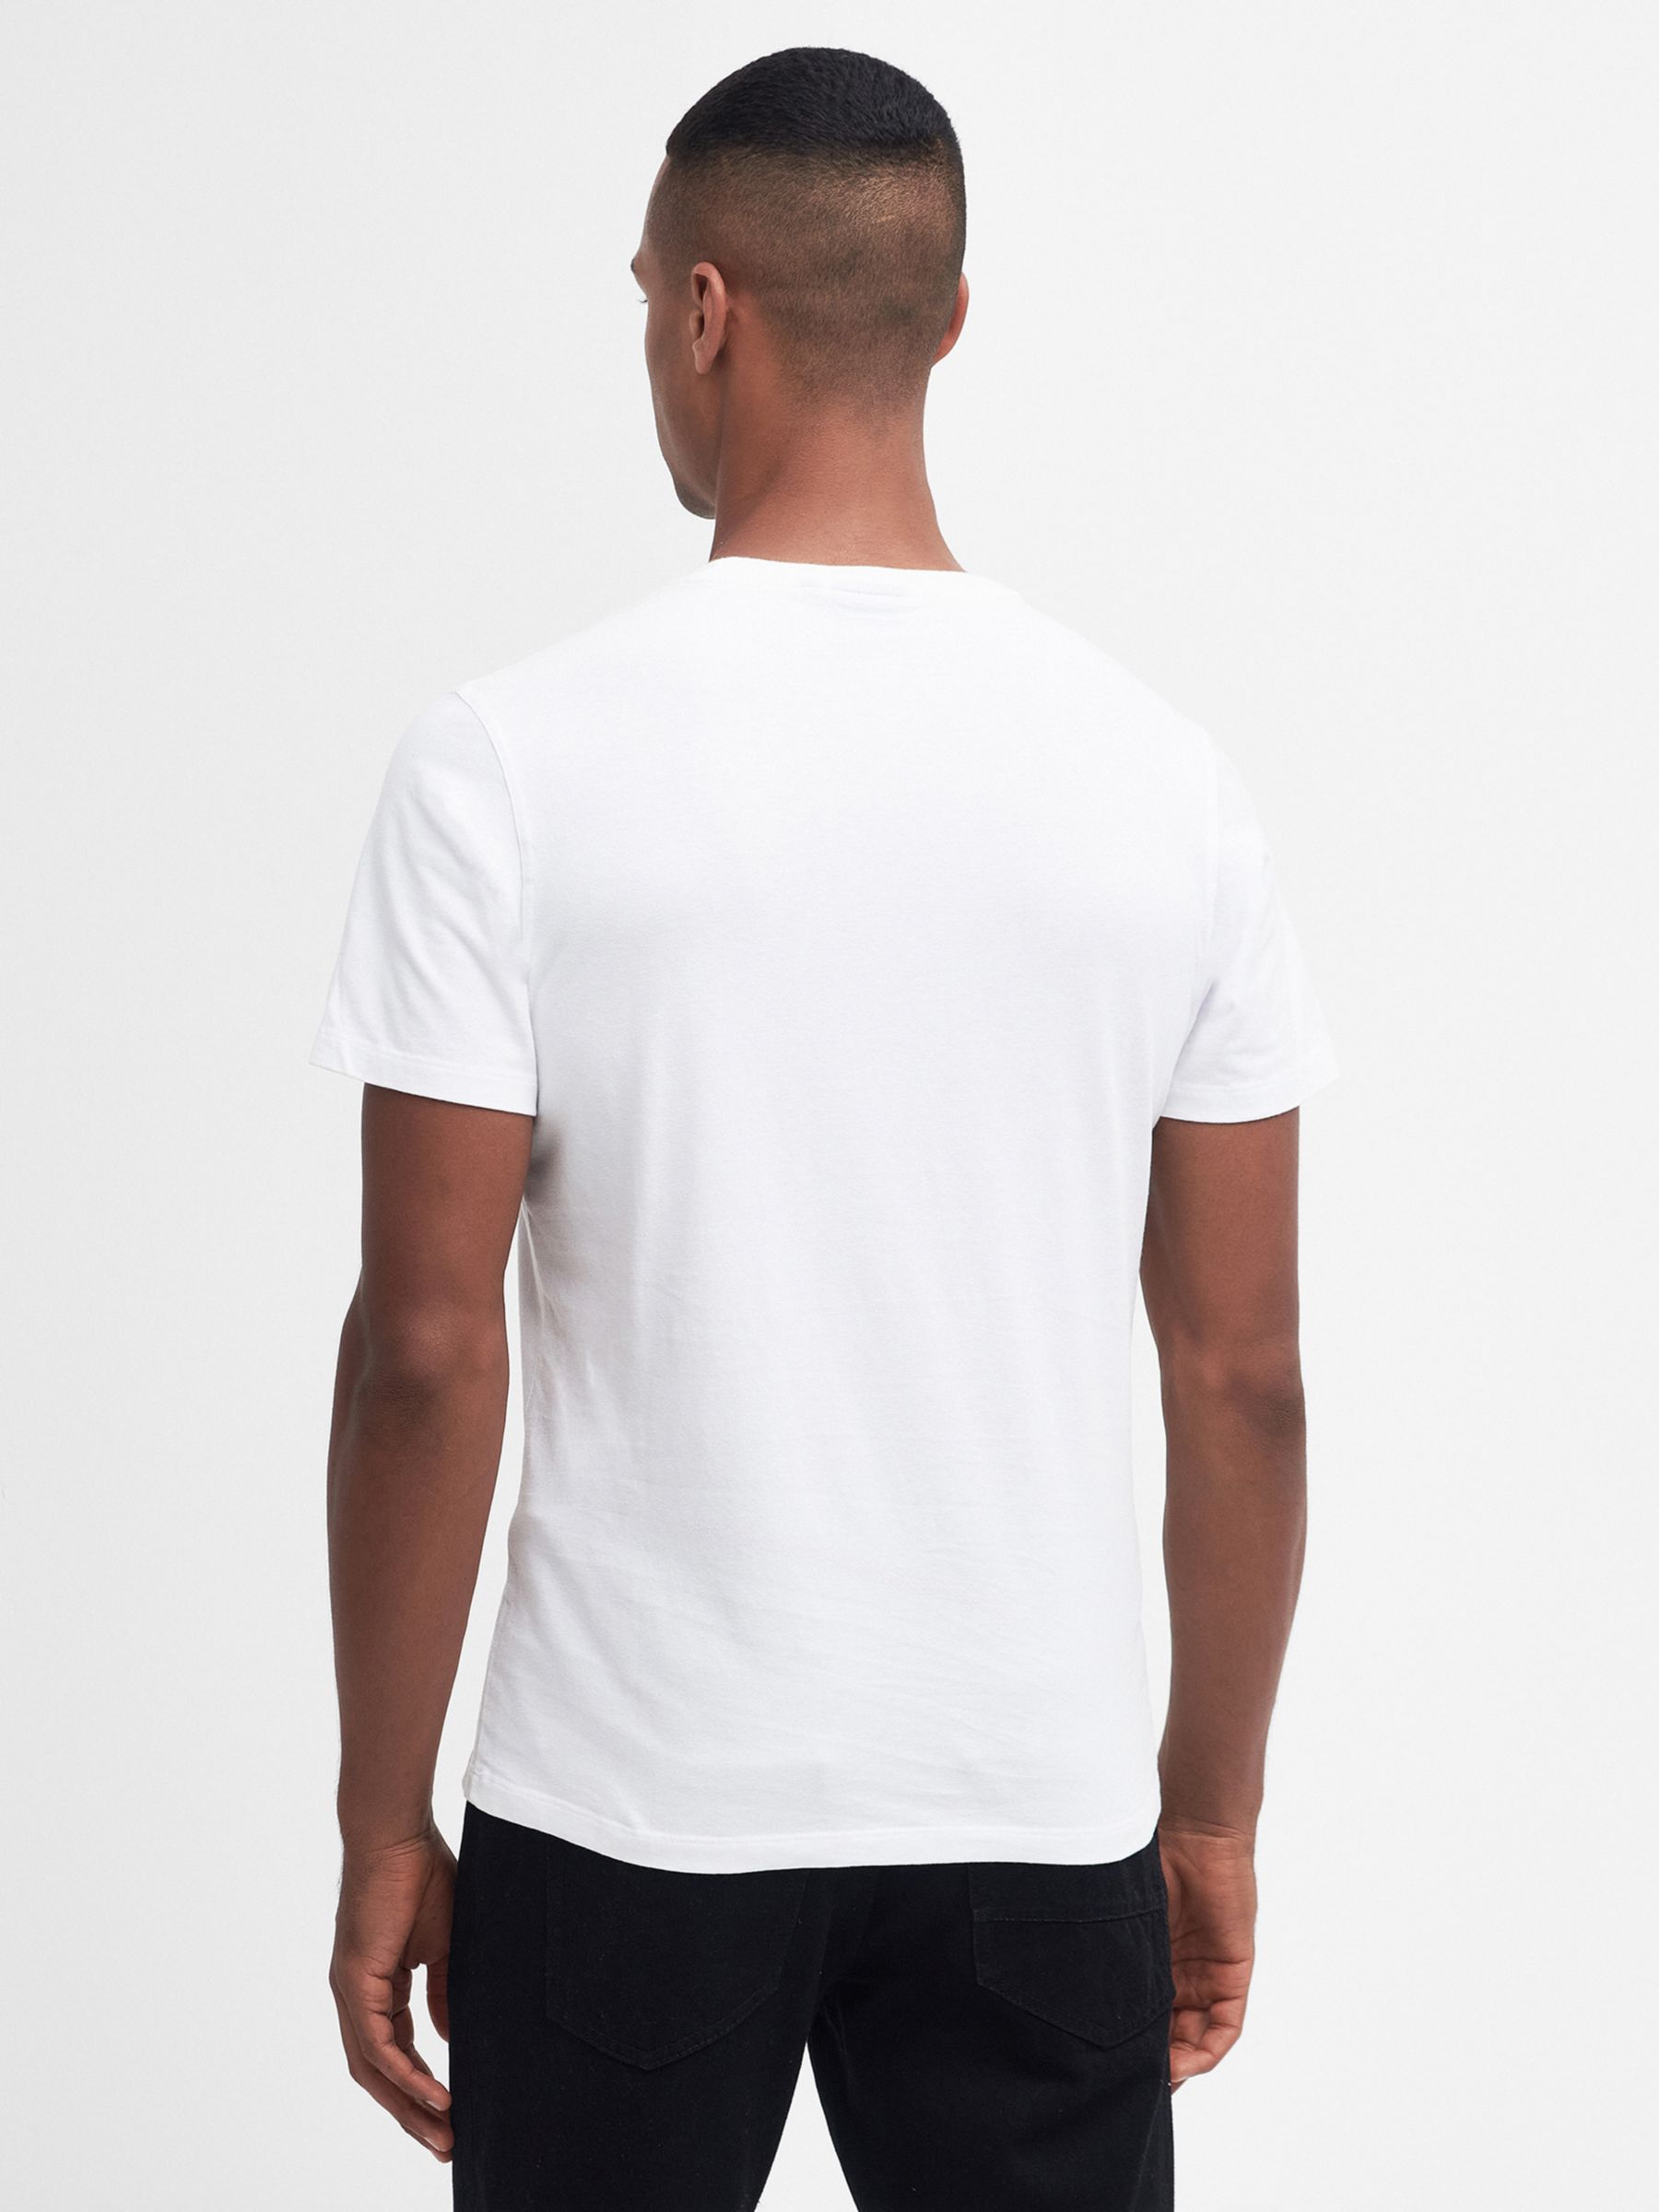 Barbour International Spirit T-Shirt, Whisper White, S